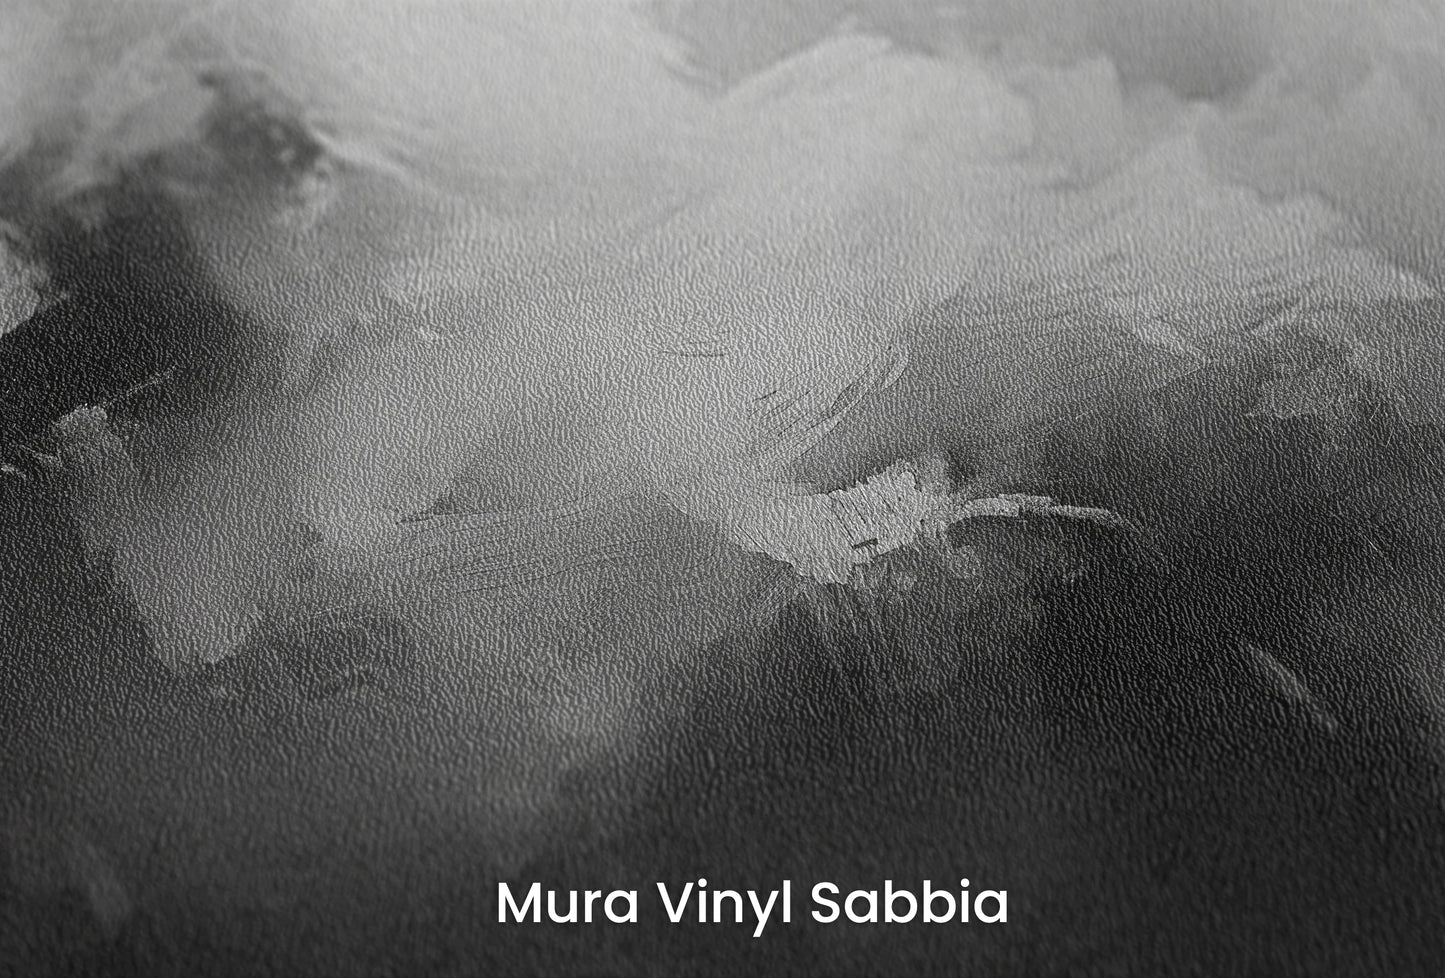 Zbliżenie na artystyczną fototapetę o nazwie Monochromatic Mood na podłożu Mura Vinyl Sabbia struktura grubego ziarna piasku.